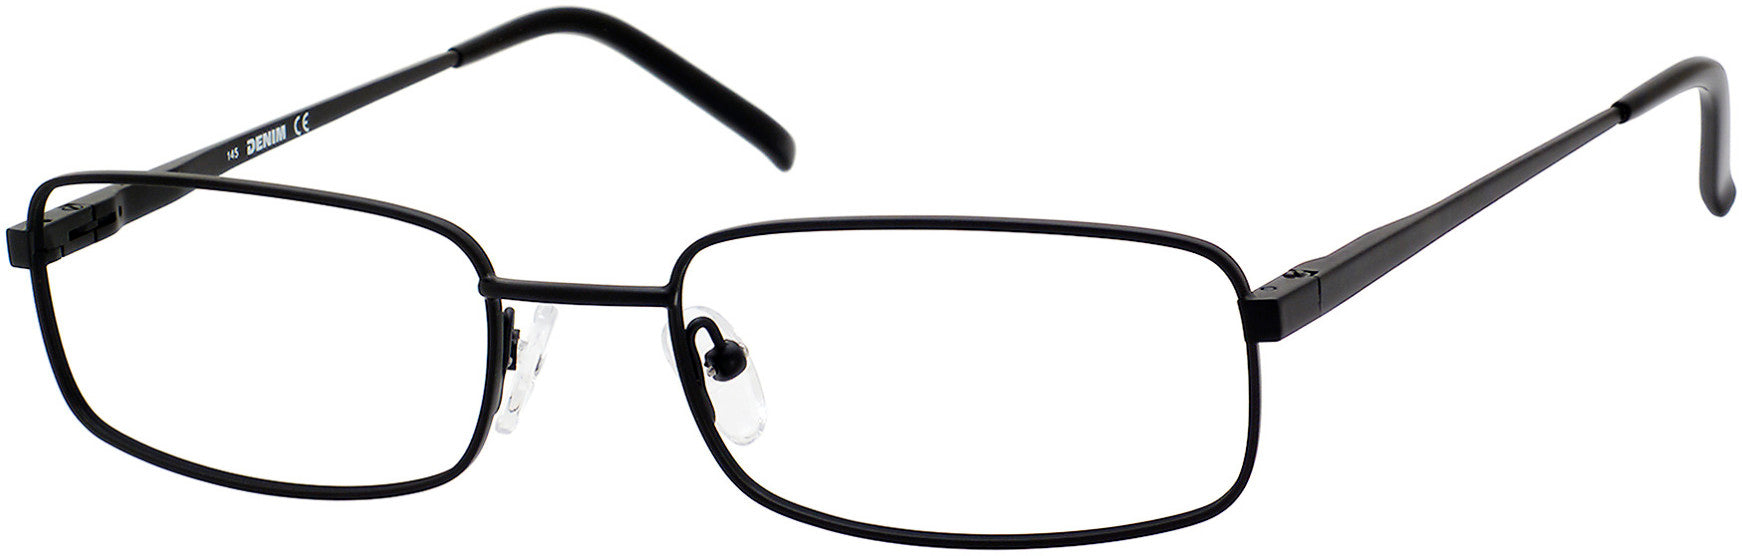  Denim 149 Rectangular Eyeglasses 0003-0003  Matte Black (00 Demo Lens)